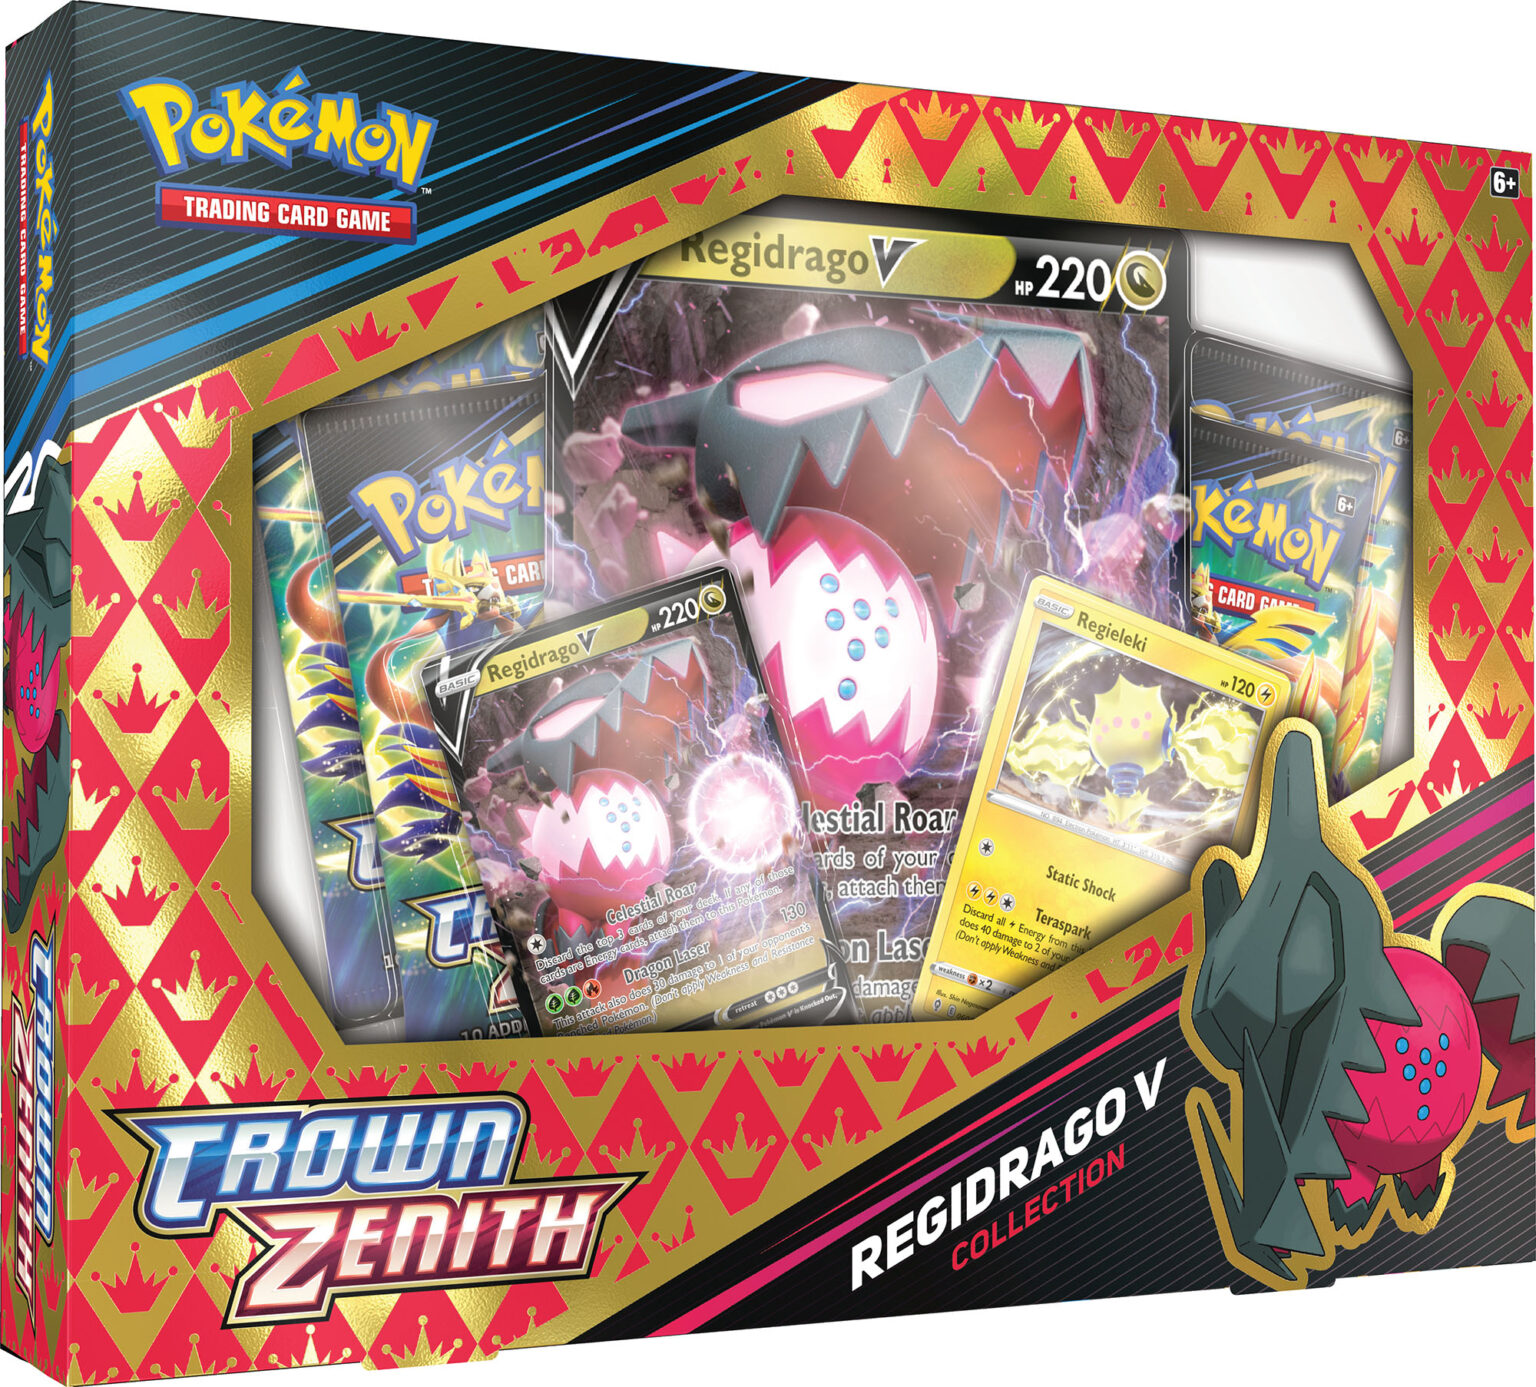 Pokémon TCG: Crown Zenith - Regidrago V Box | PokéBros